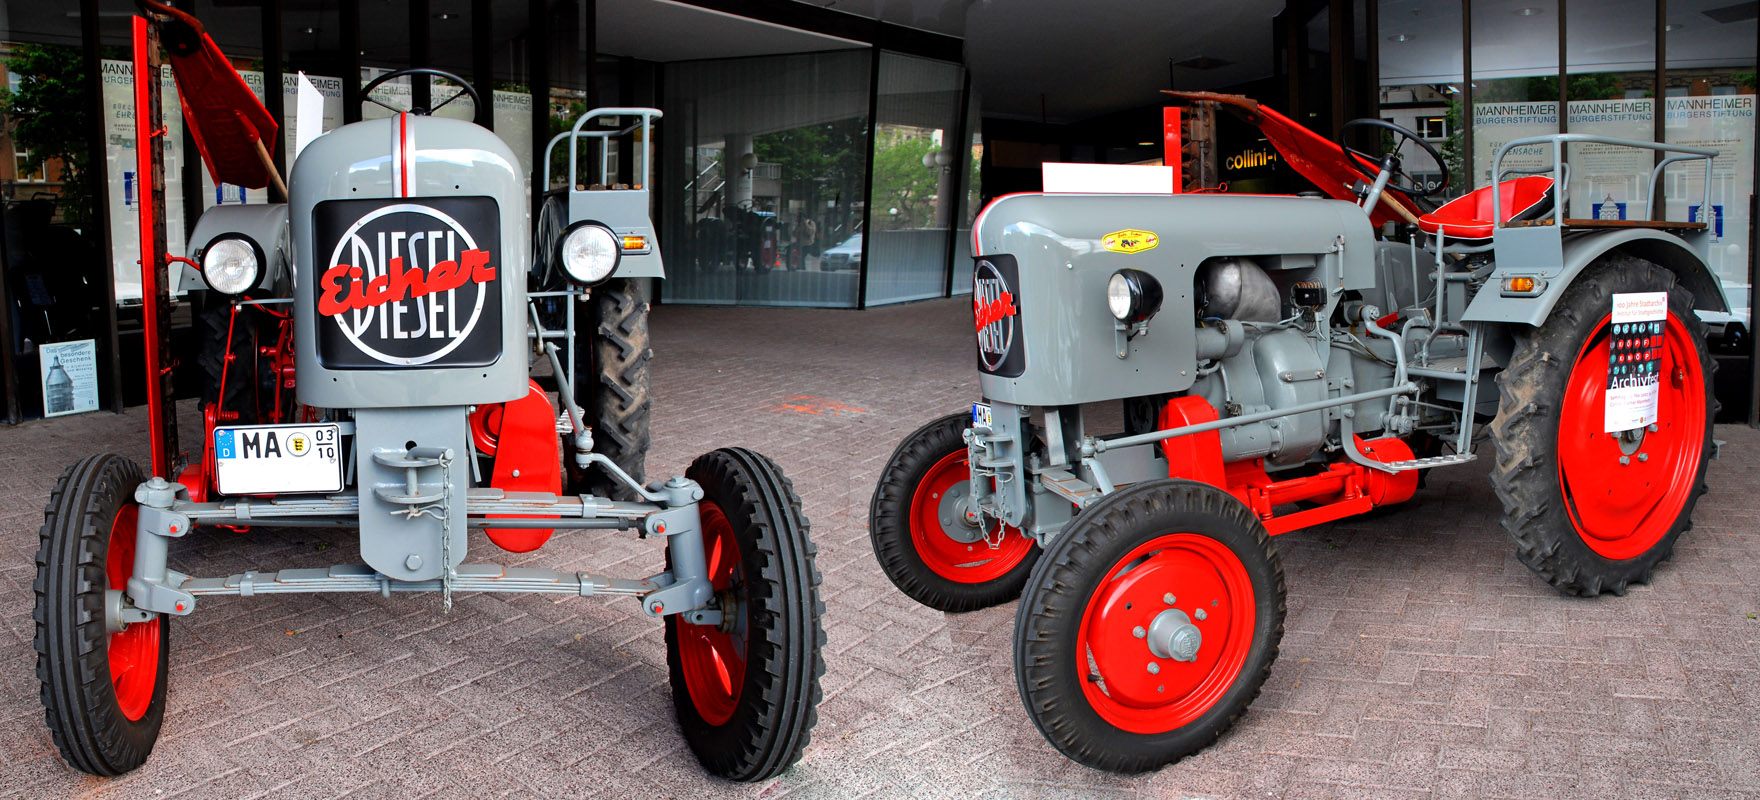 traktor_mannheim_800.jpg